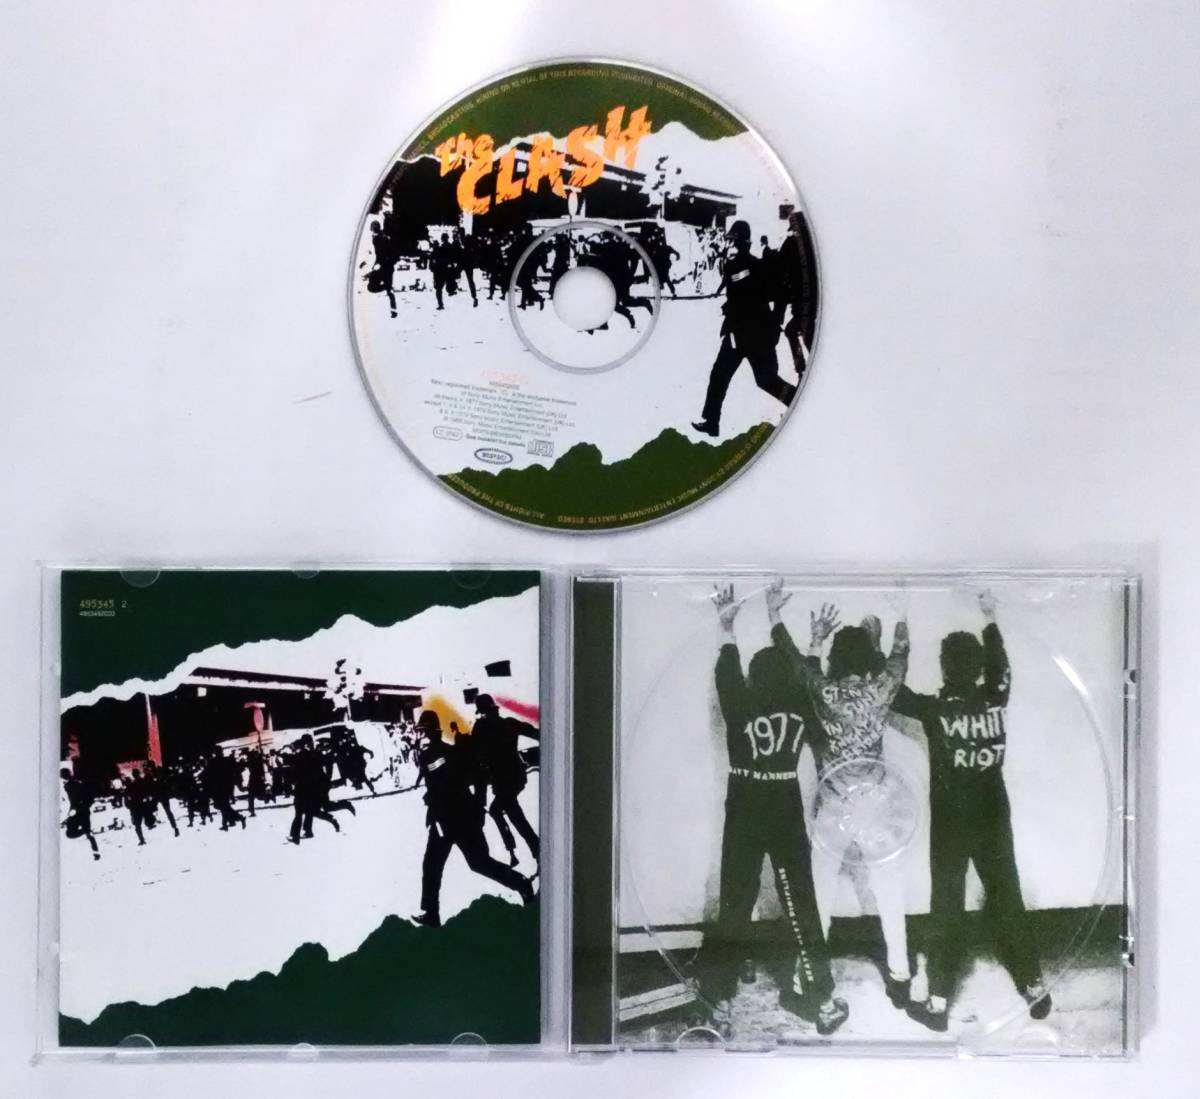  десять тысяч 1 10273 The Clash/ The * авария [ западная музыка CD альбом ] импортированный автомобиль * зарубежная запись e pick Sony все 15 искривление 